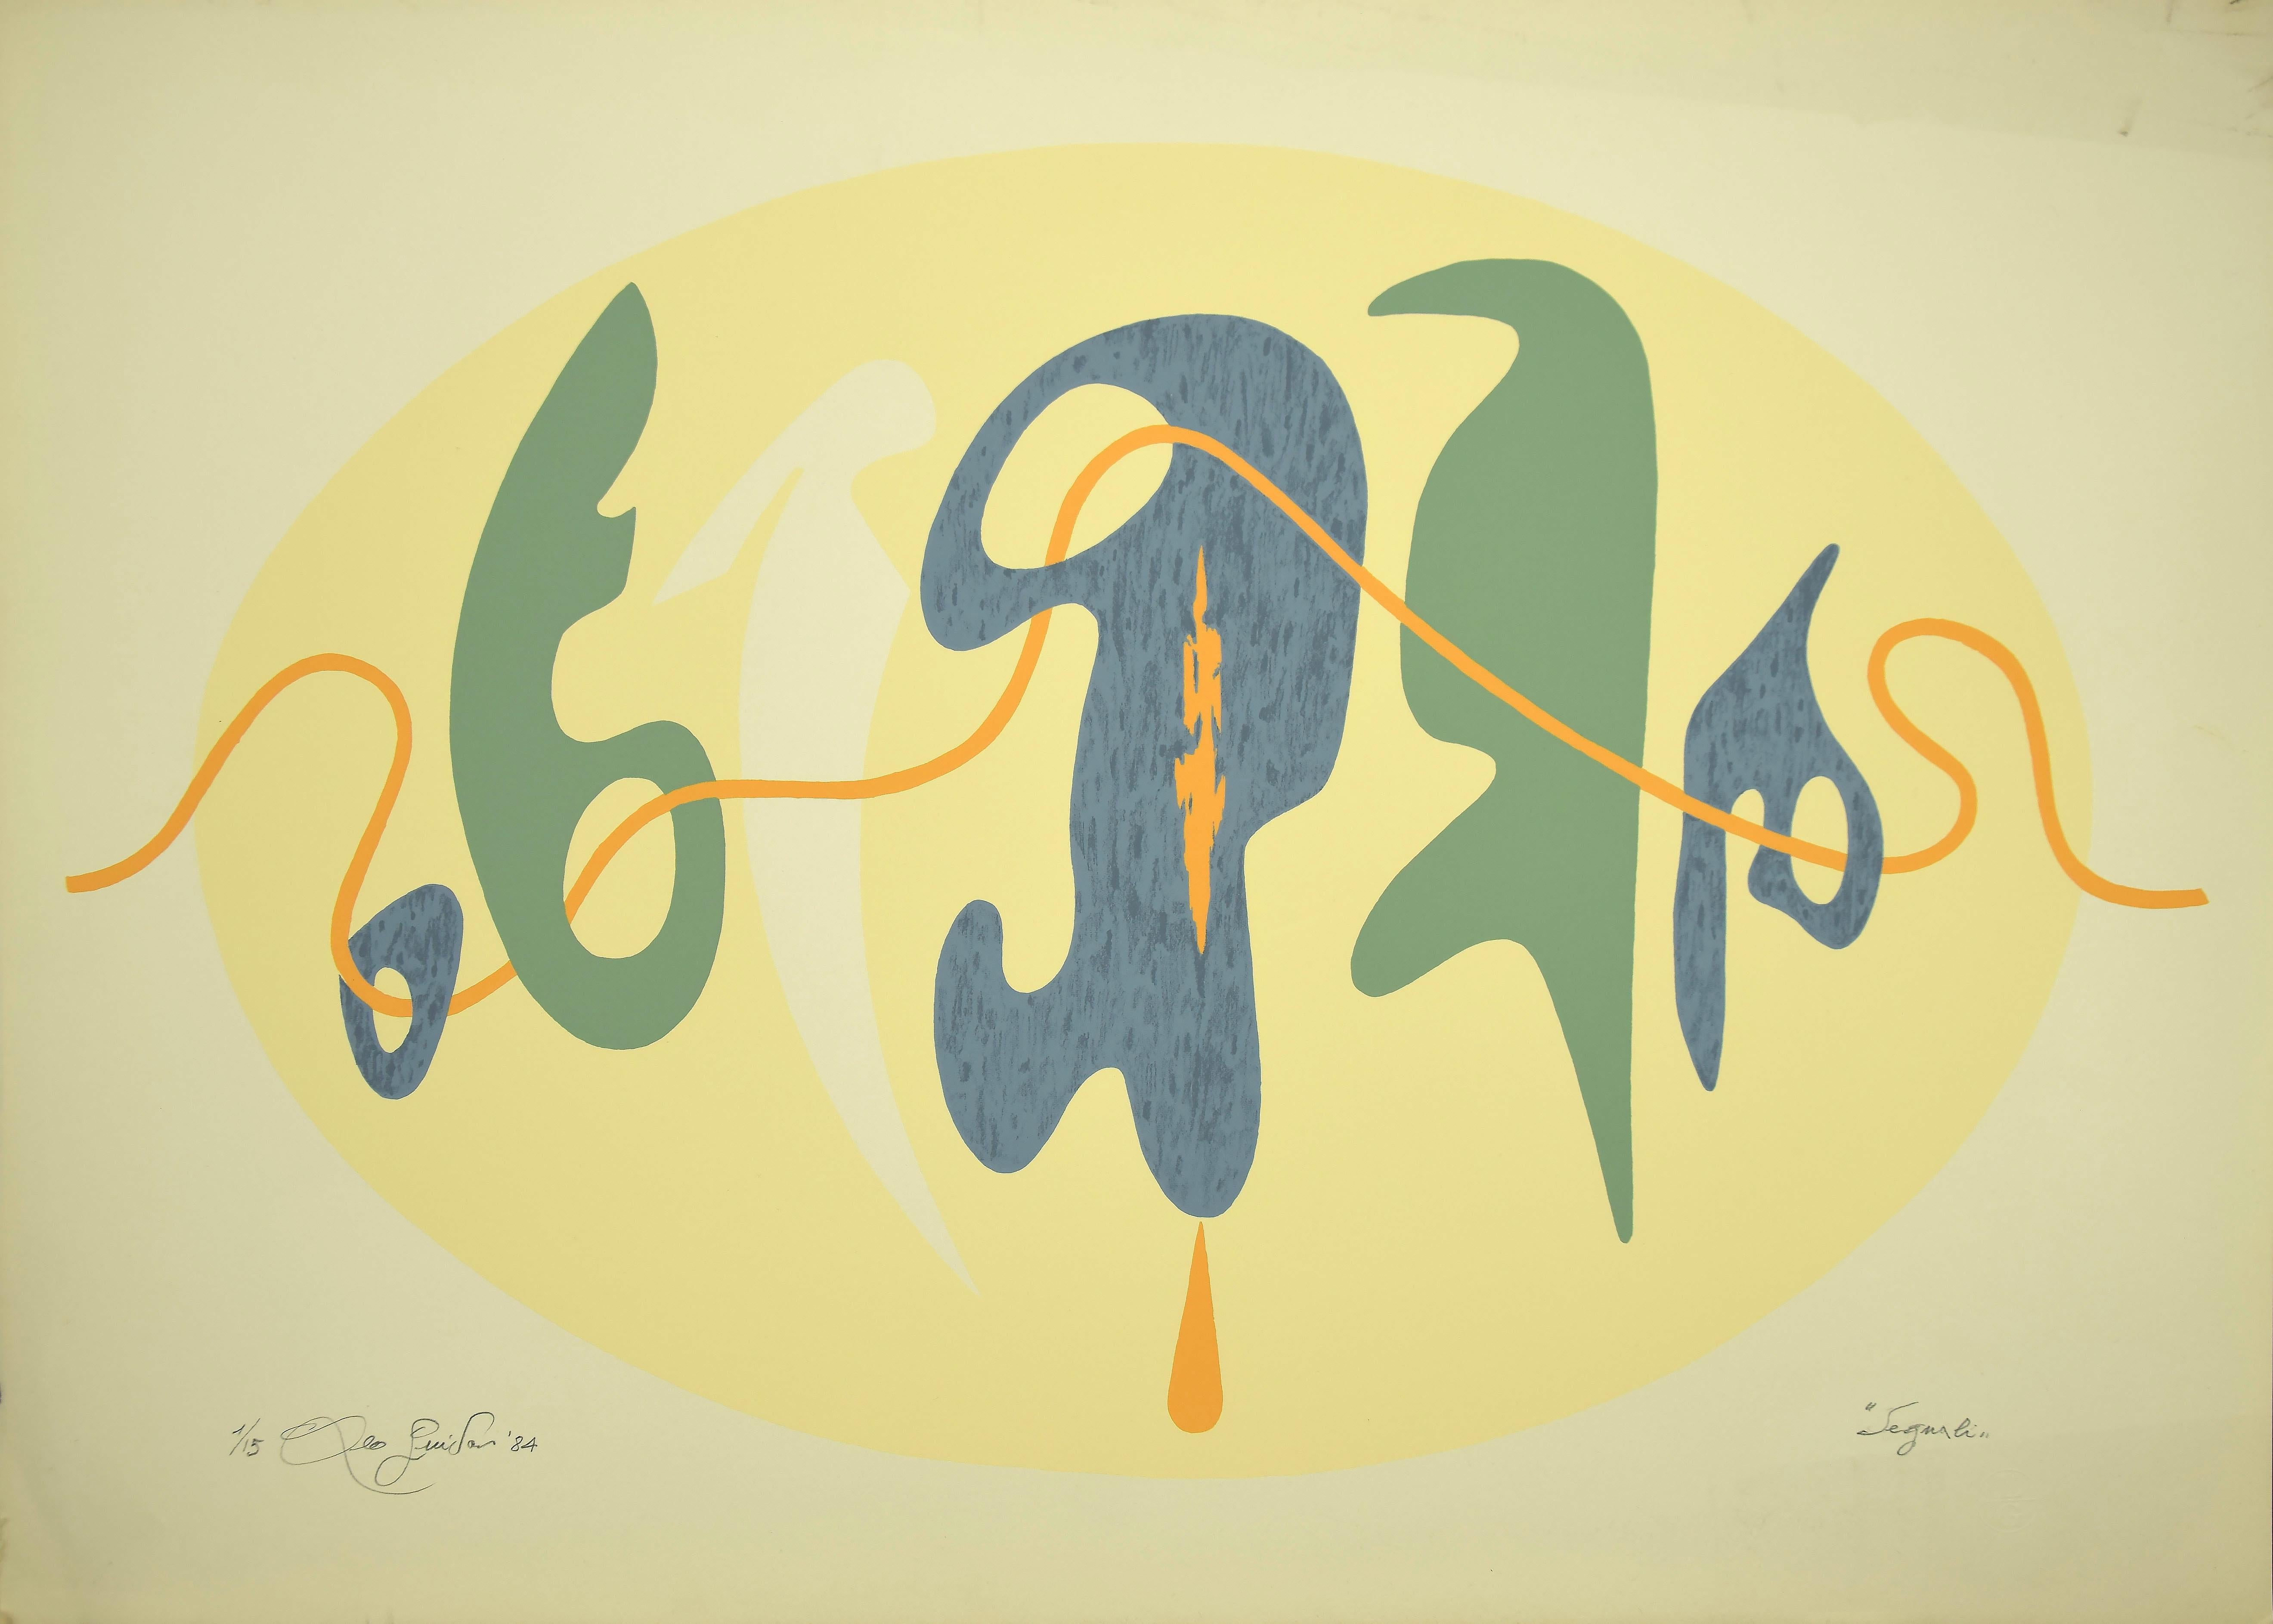 Signals ist ein 1984 entstandenes Originalwerk des italienischen zeitgenössischen Künstlers  Leo Guida  (1992 - 2017).

Original-Lithographie auf Karton.

Links unten mit Bleistift handsigniert und datiert.

Rechts unten nummeriert, die Auflage von